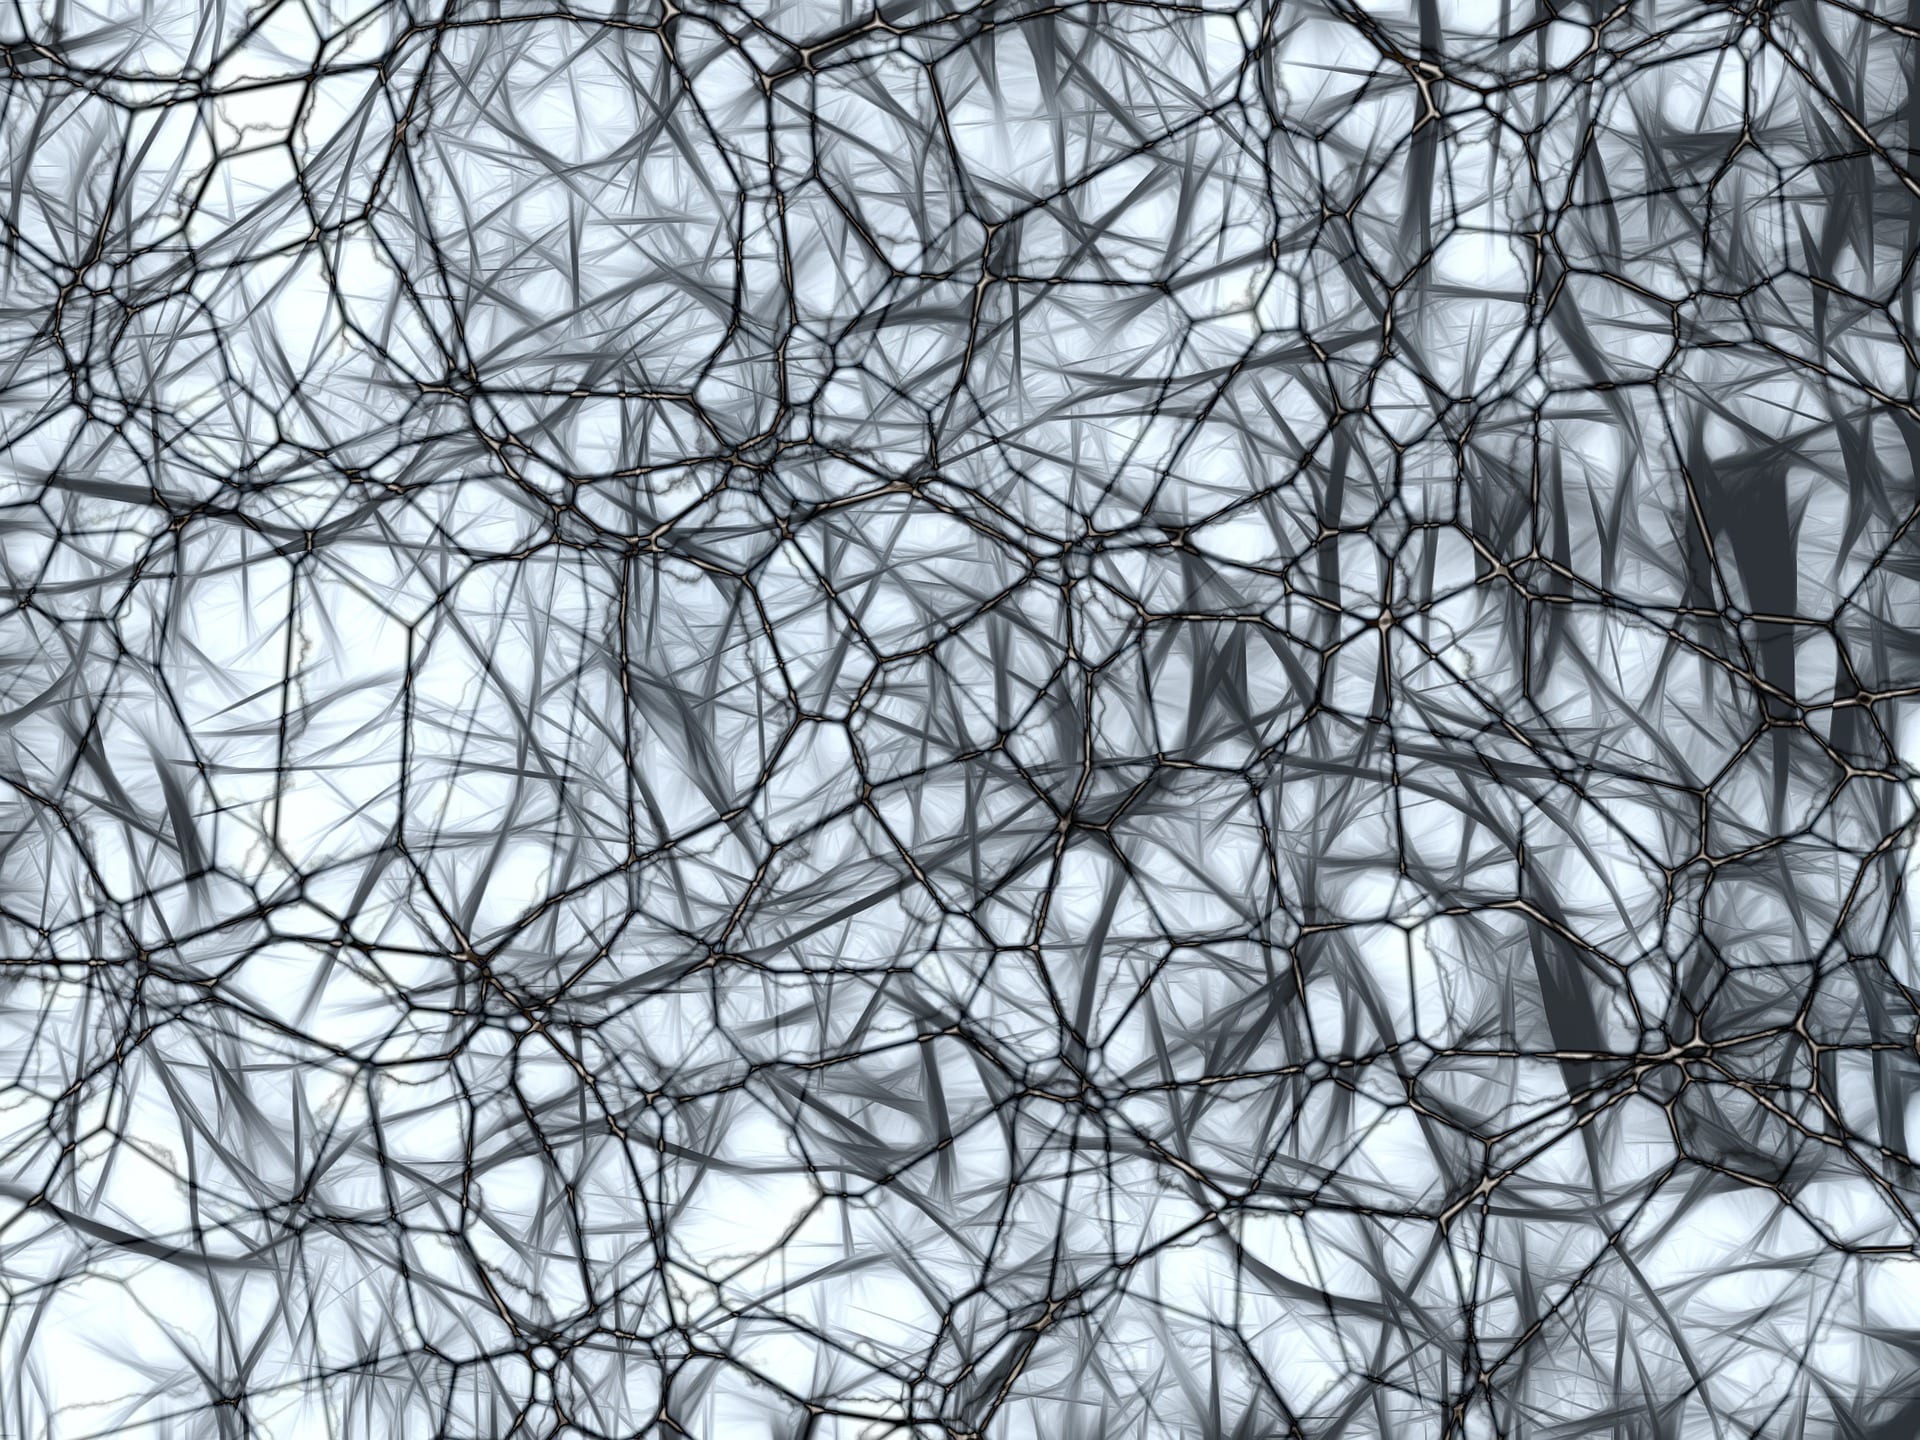 neurons-877577_1920